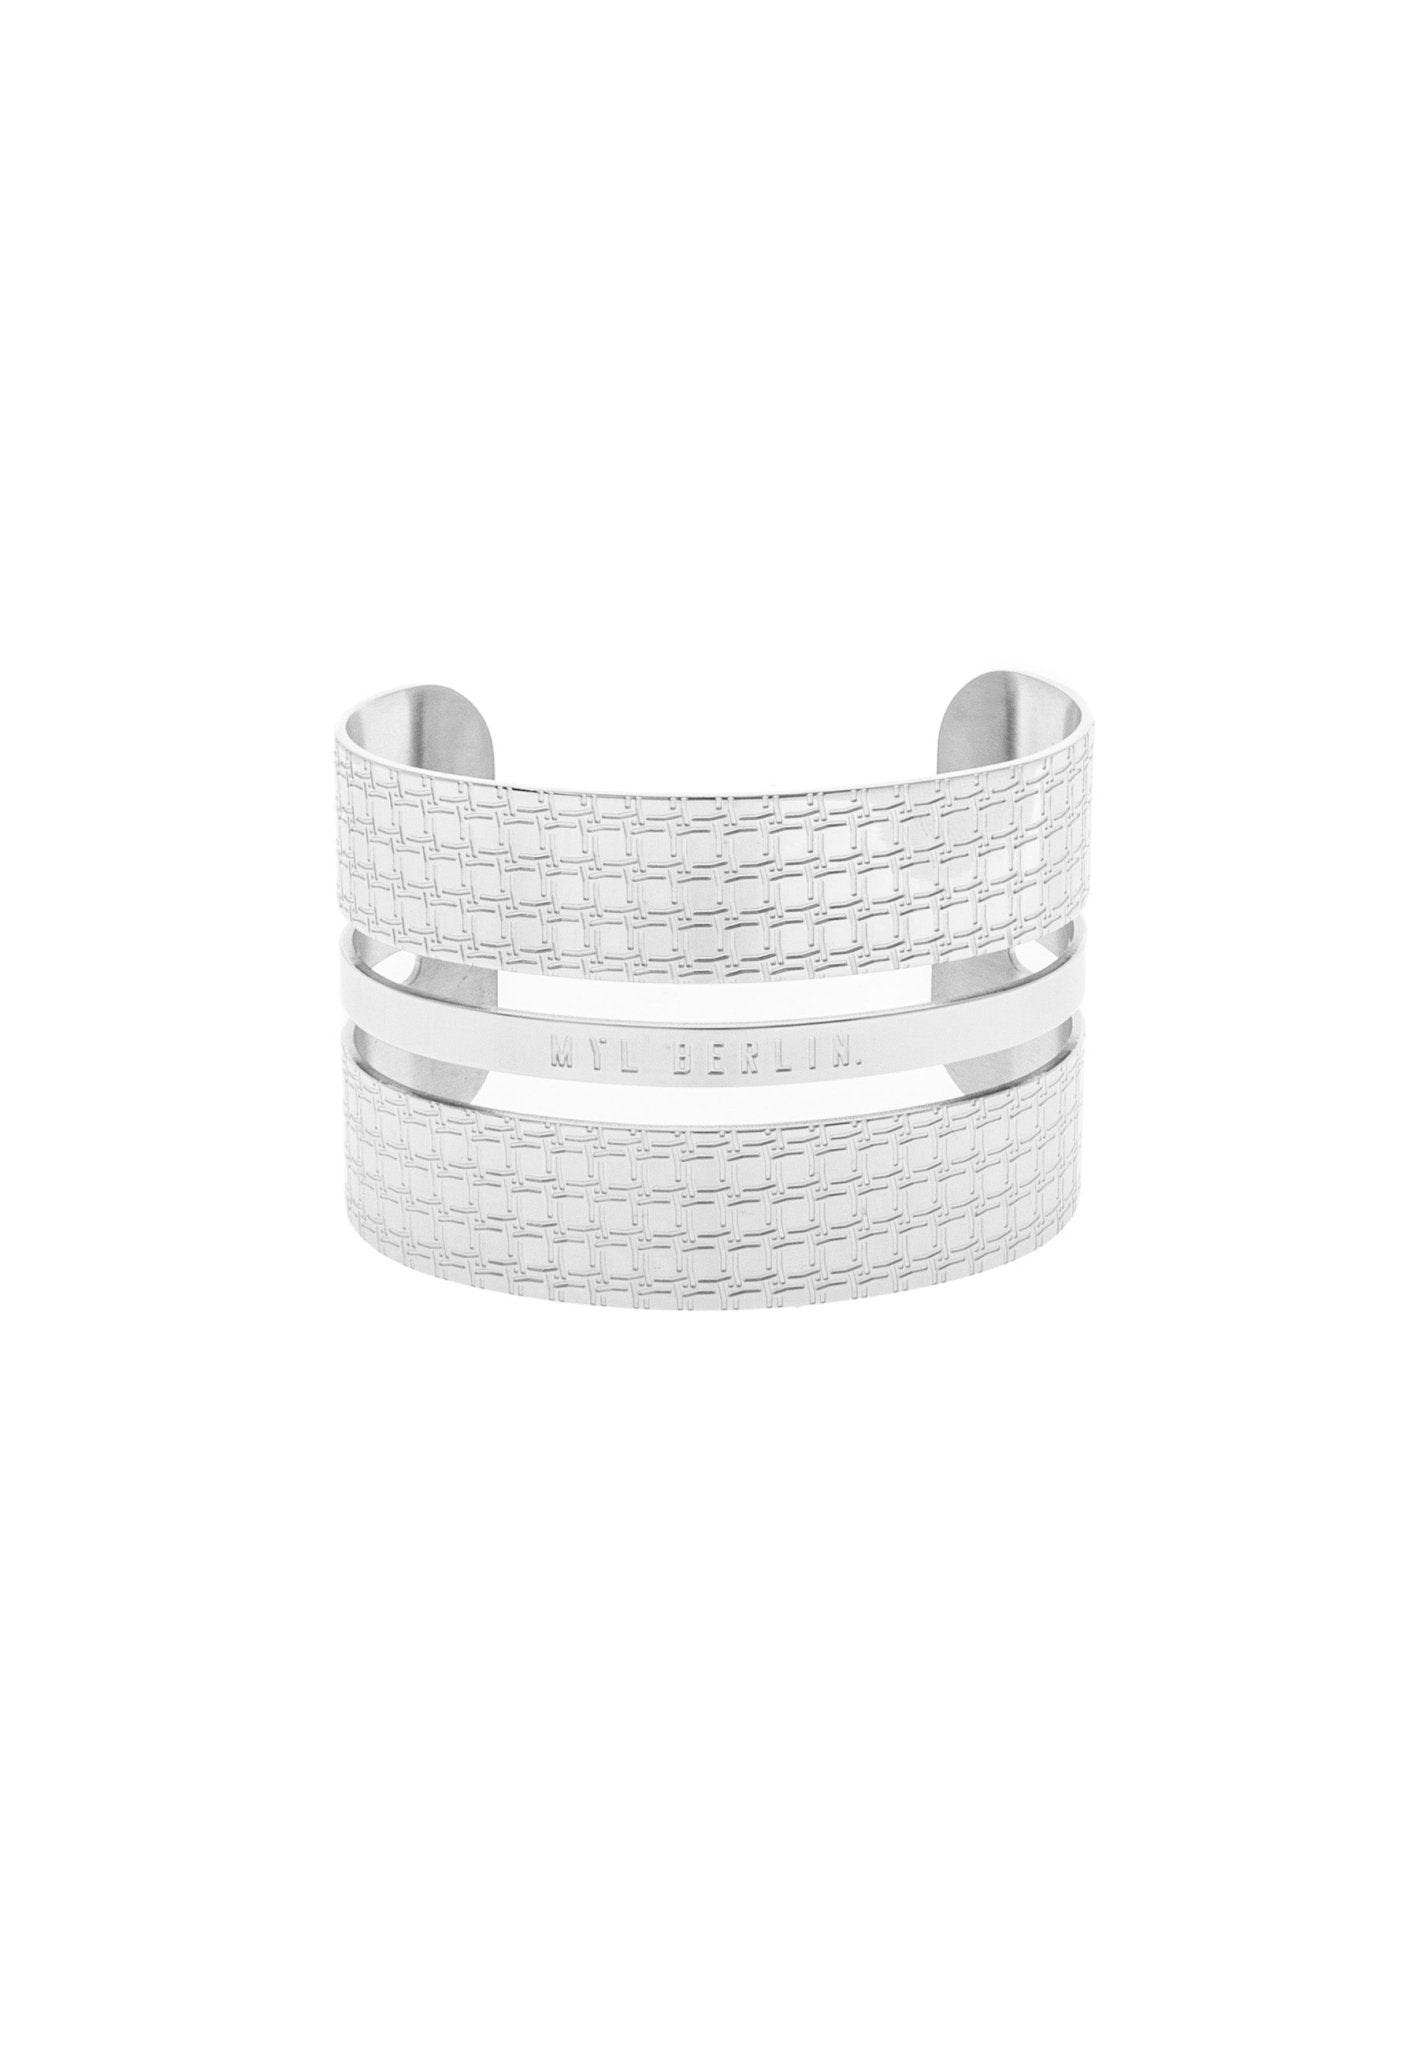 Wide Open Cuff Bracelet “The Shieldmaiden” - MYL BERLIN - 4260654112375 - 4260654112375